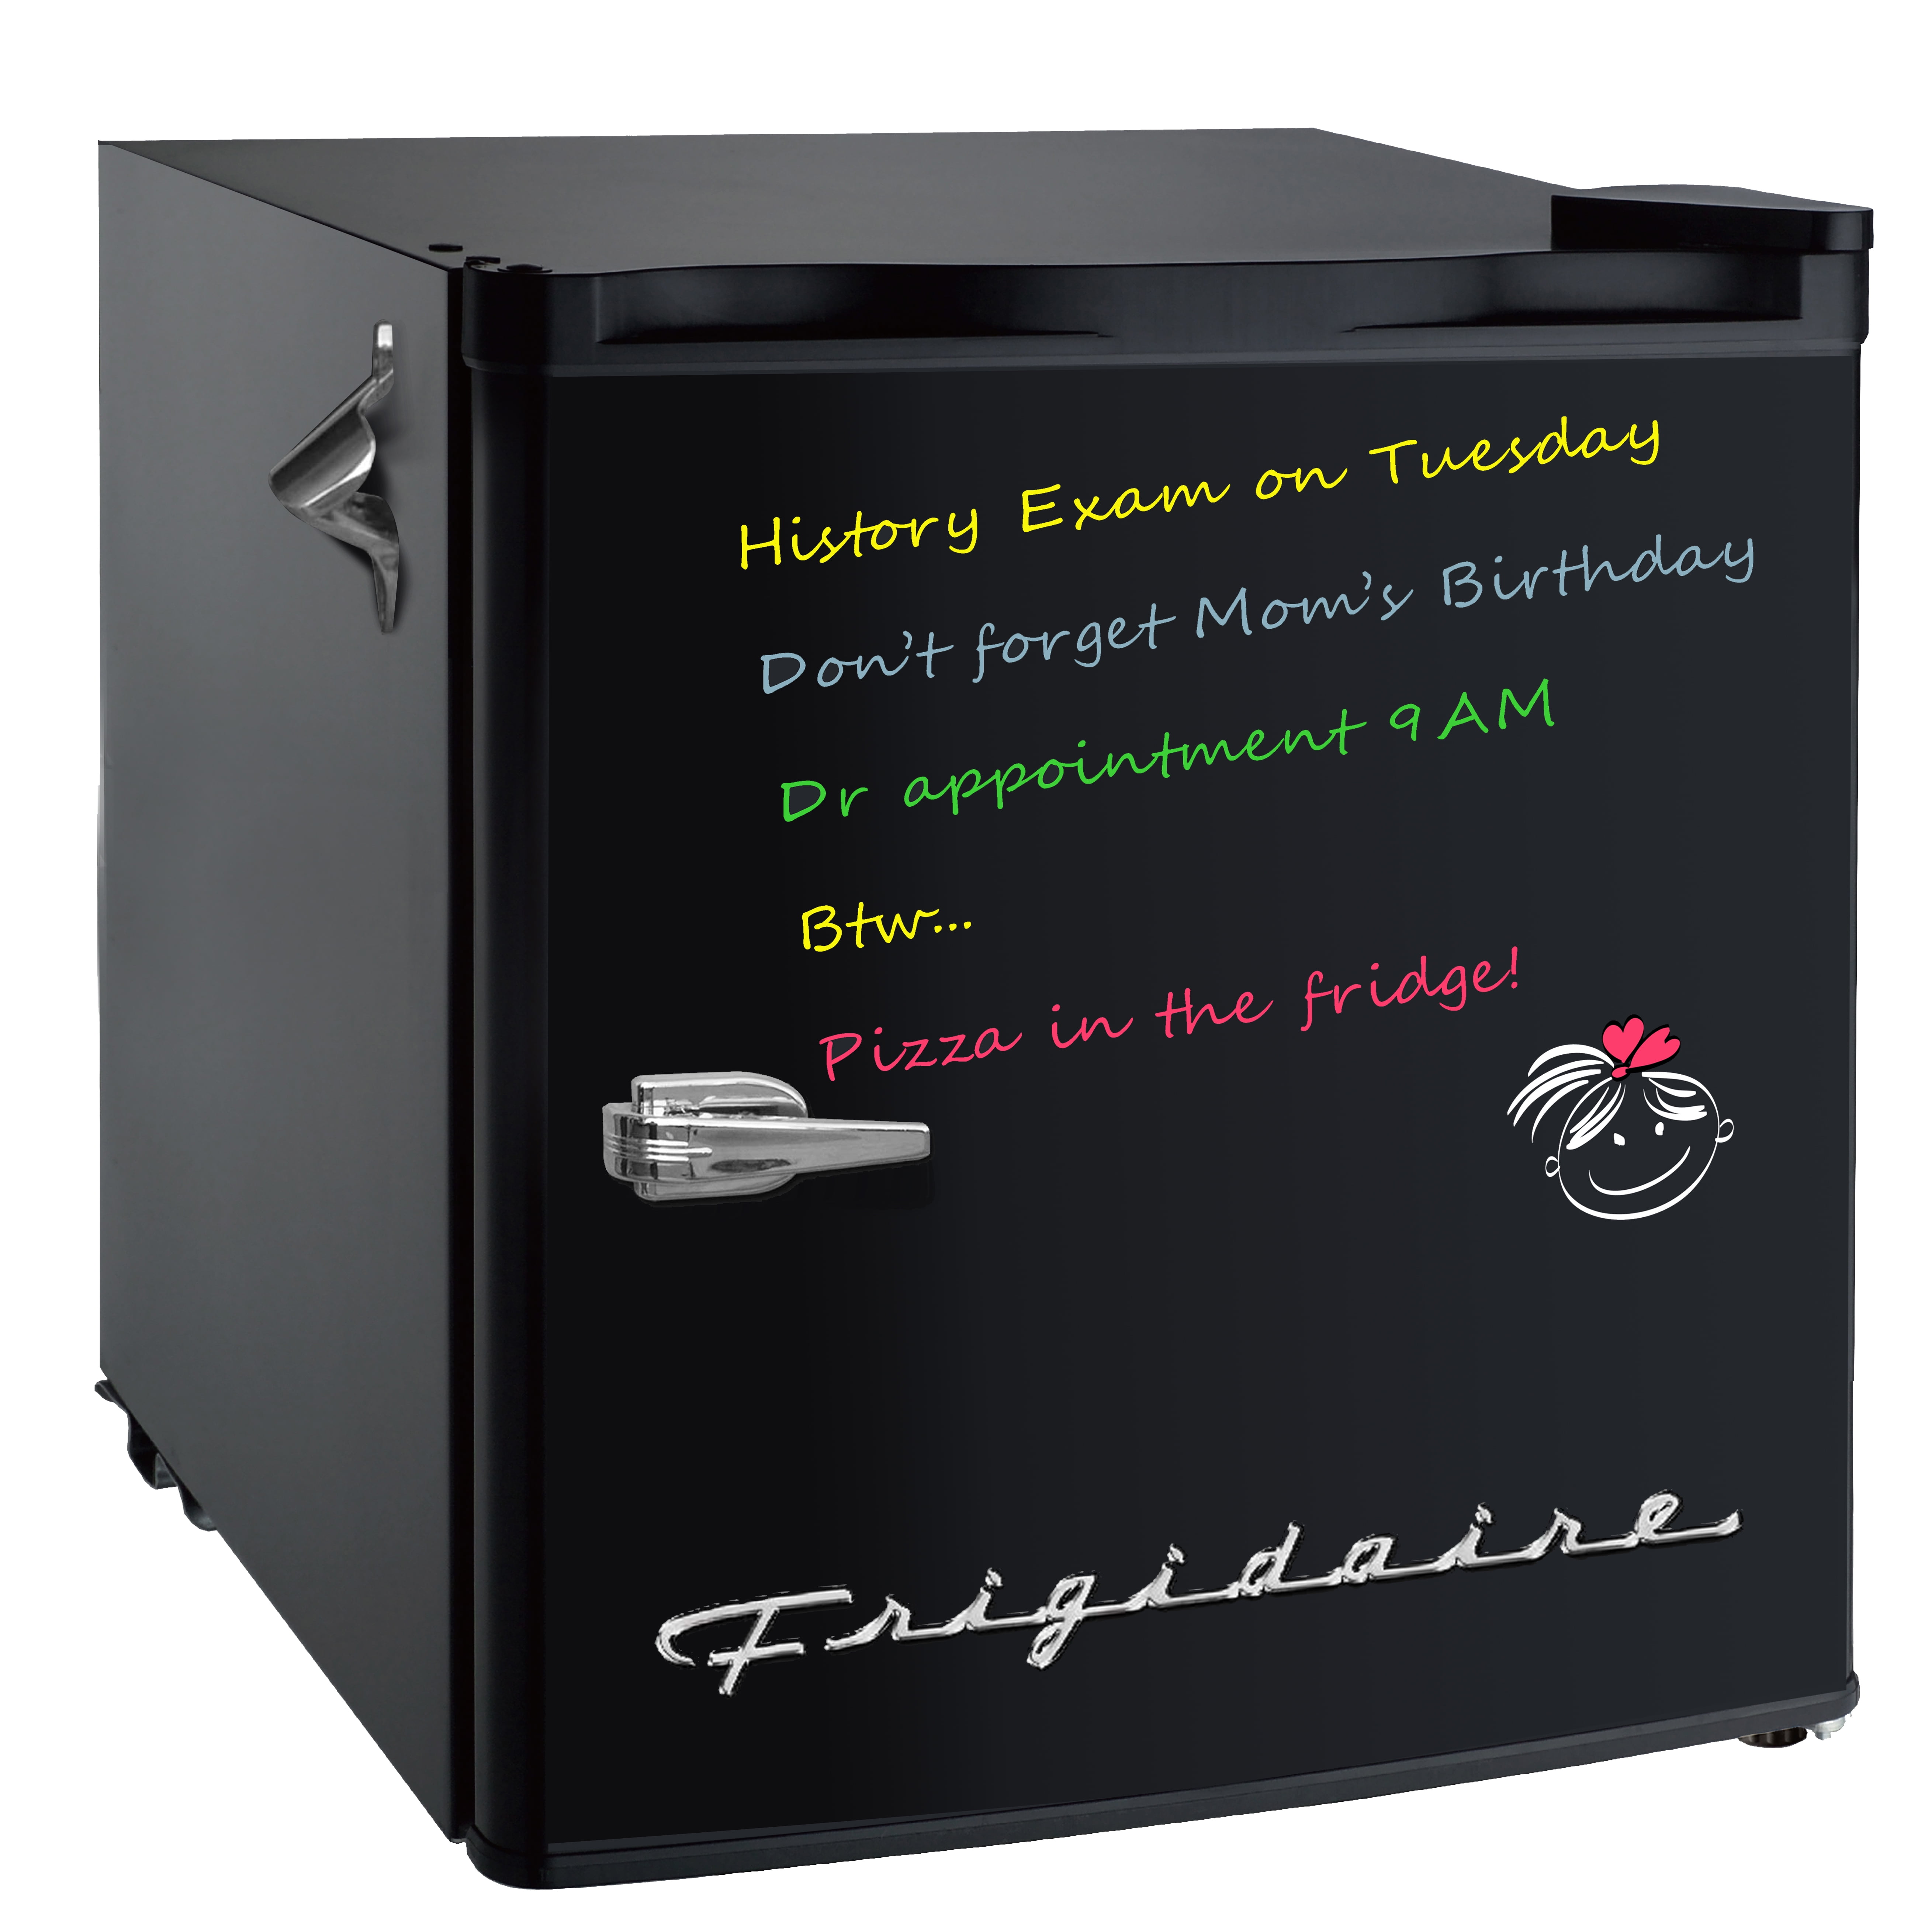 Chào mừng bạn đến với thế giới của các tủ lạnh mini retro Frigidaire! Với màu sắc độc đáo, kiểu dáng cổ điển và chức năng hiện đại, tủ lạnh mini này sẽ trang trí cho không gian của bạn thêm phần độc đáo. Hãy nhấp vào hình ảnh để khám phá các tính năng của tủ lạnh mini này.